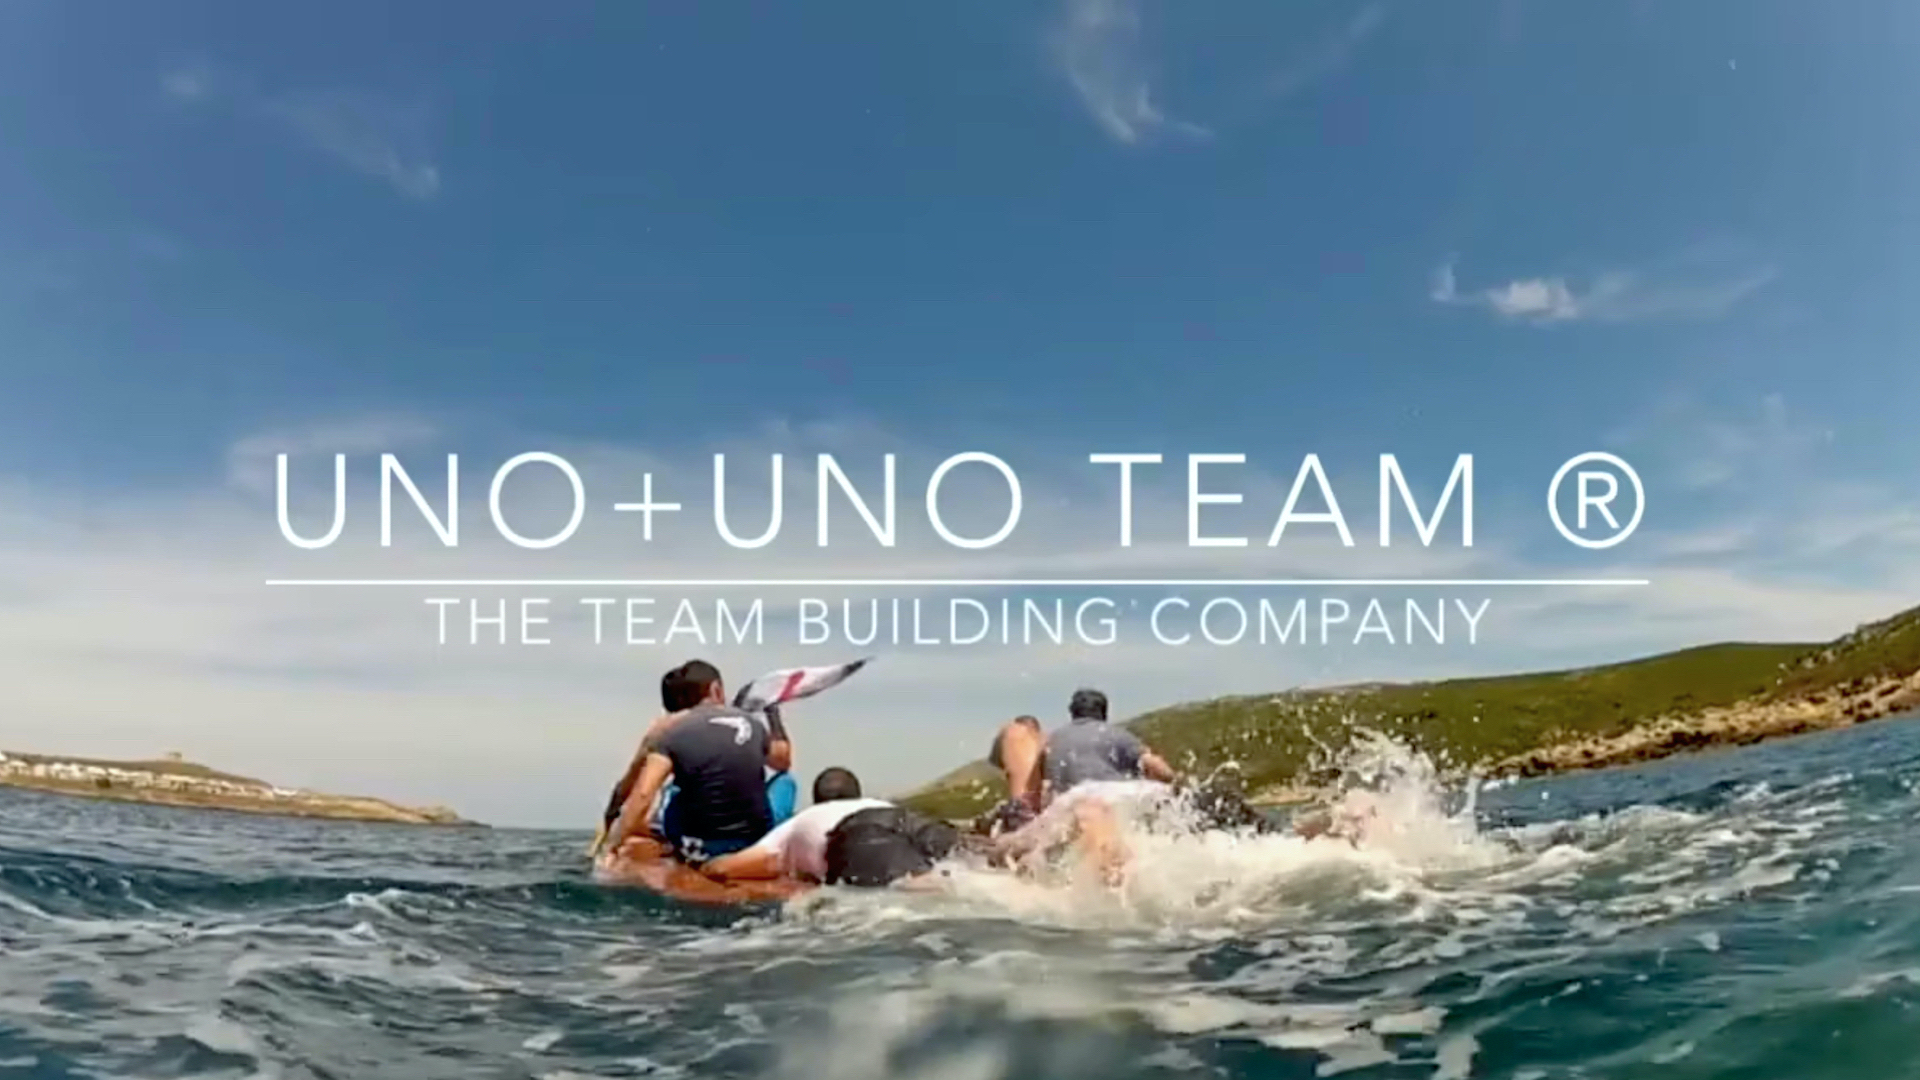 Uno+Uno Team ® The Team Building Co.